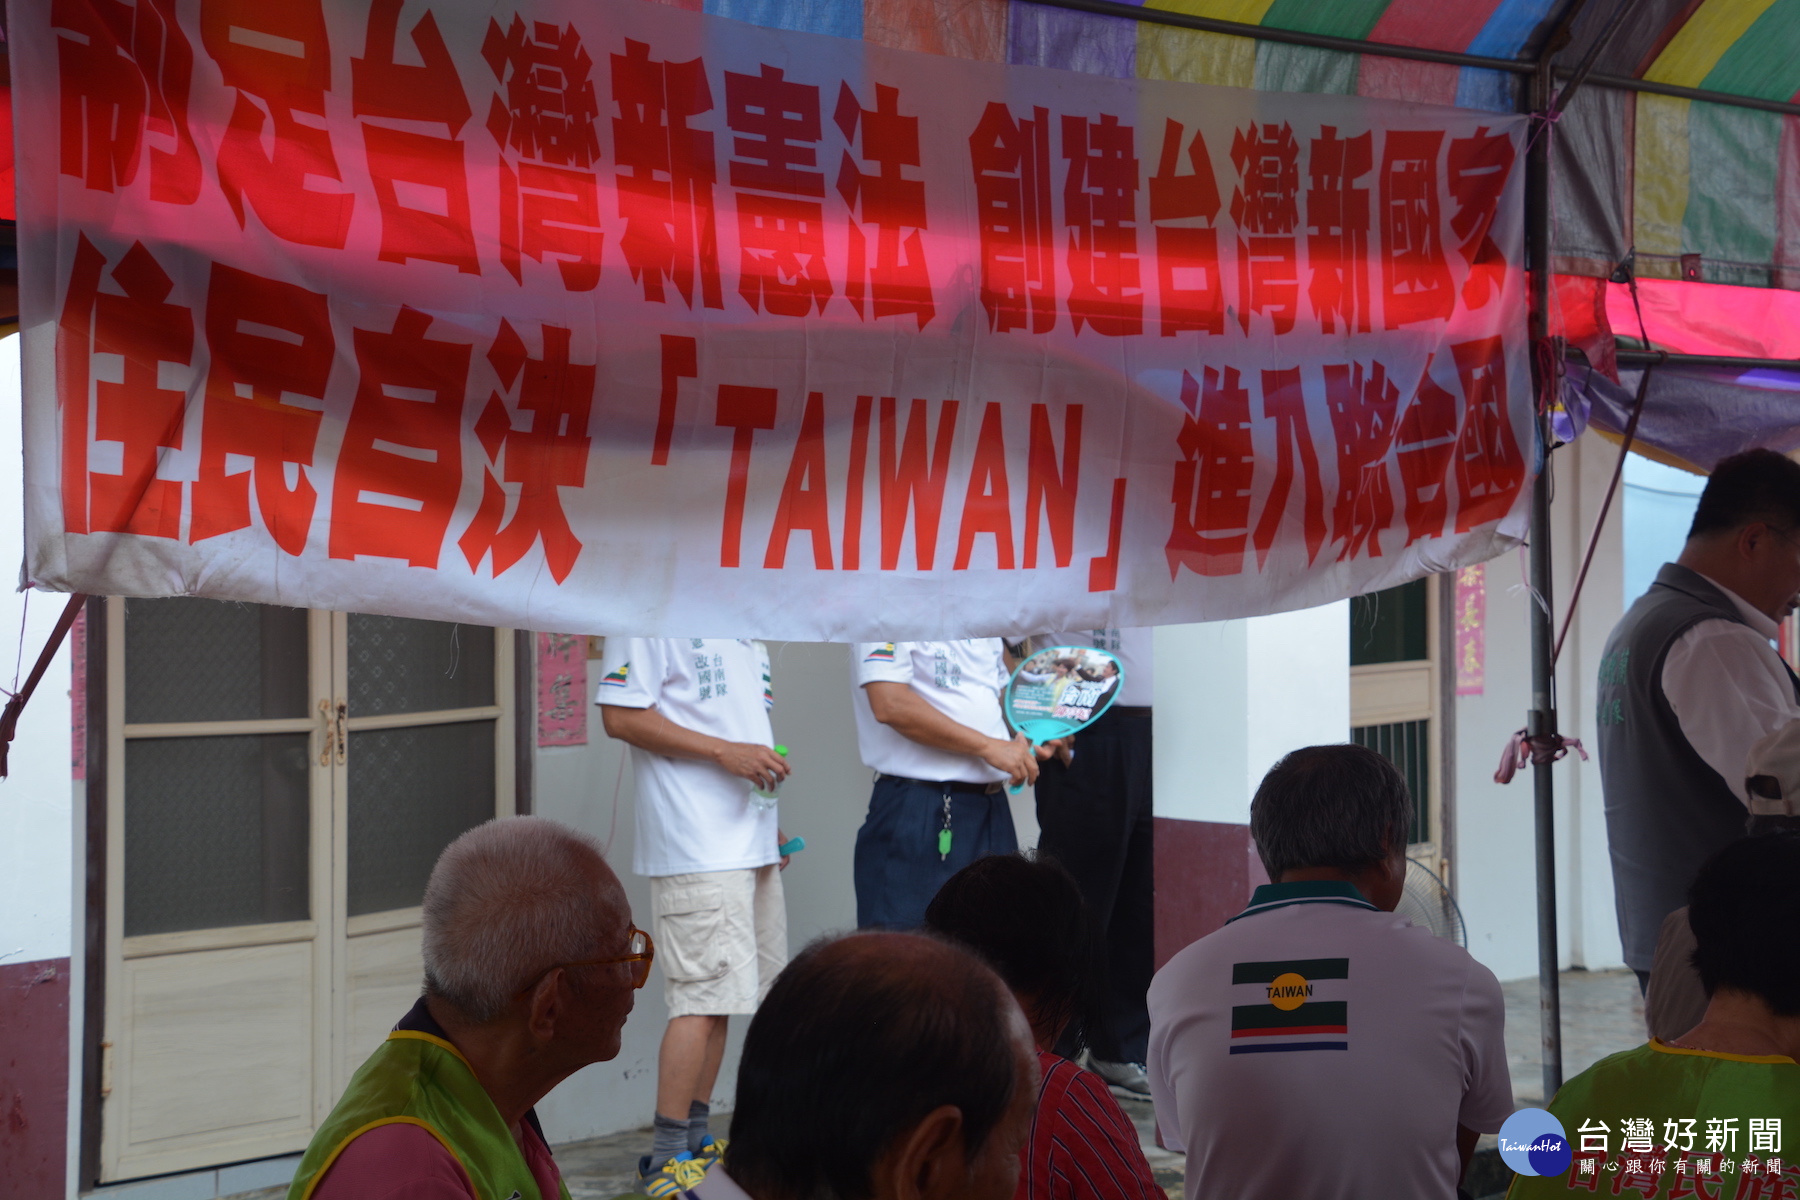 治定台灣新憲法布旗掛在會場。(圖/記者黃芳祿攝)